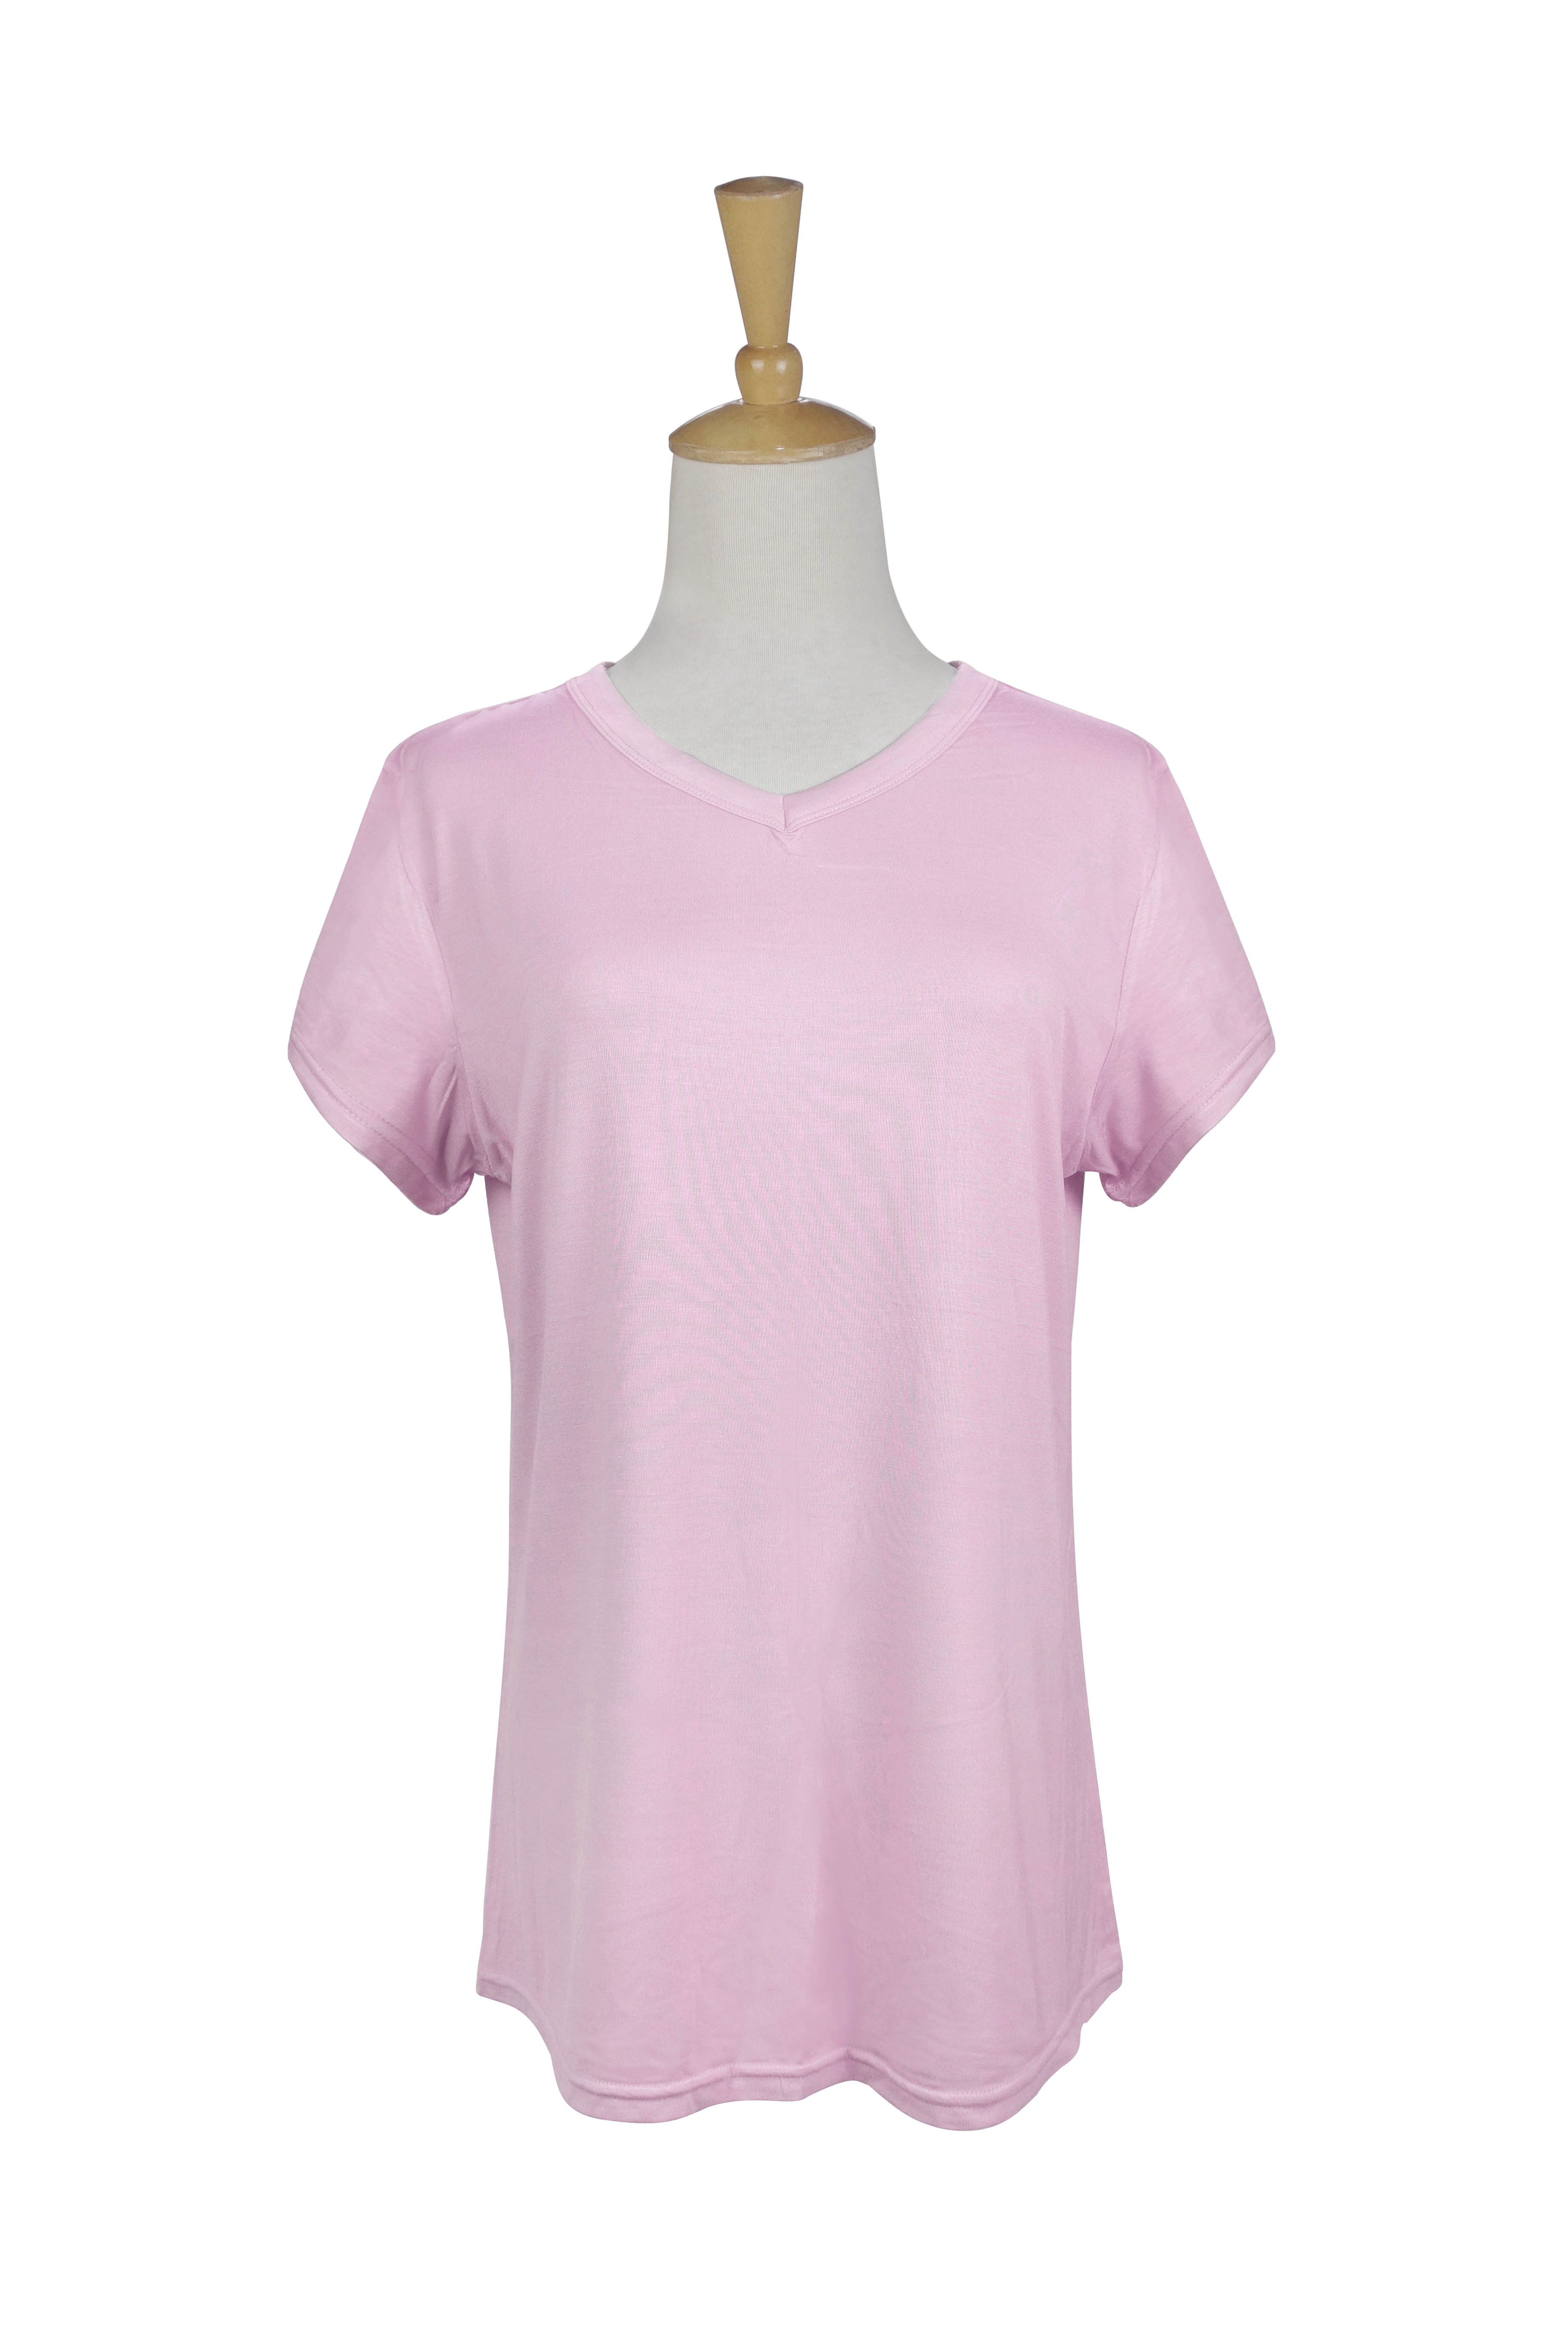 Ashley Pink Lounge Shirt